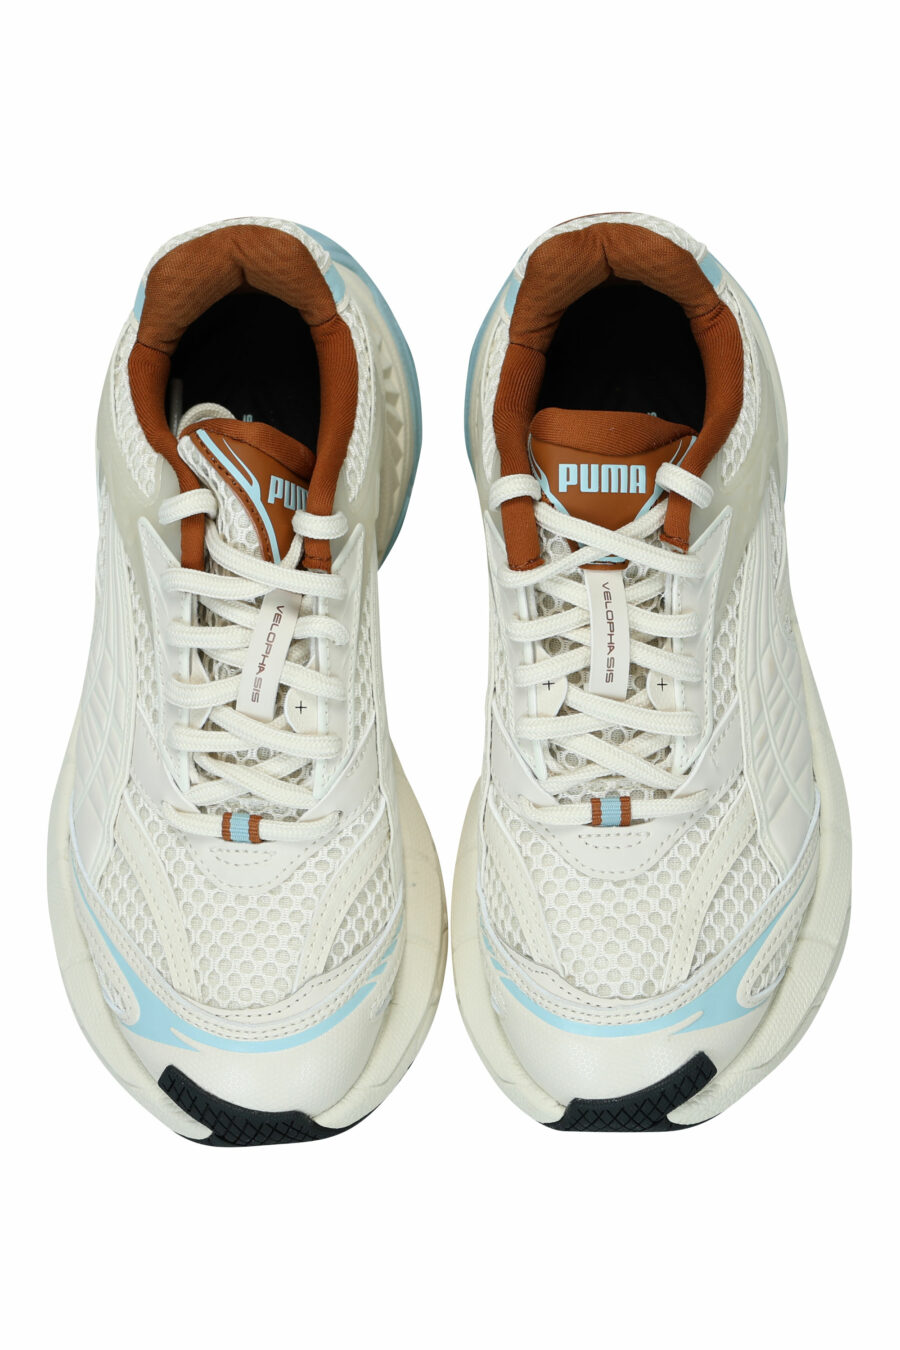 Zapatillas blancas mix con marrón y azul "velophasis" - 4099686521011 4